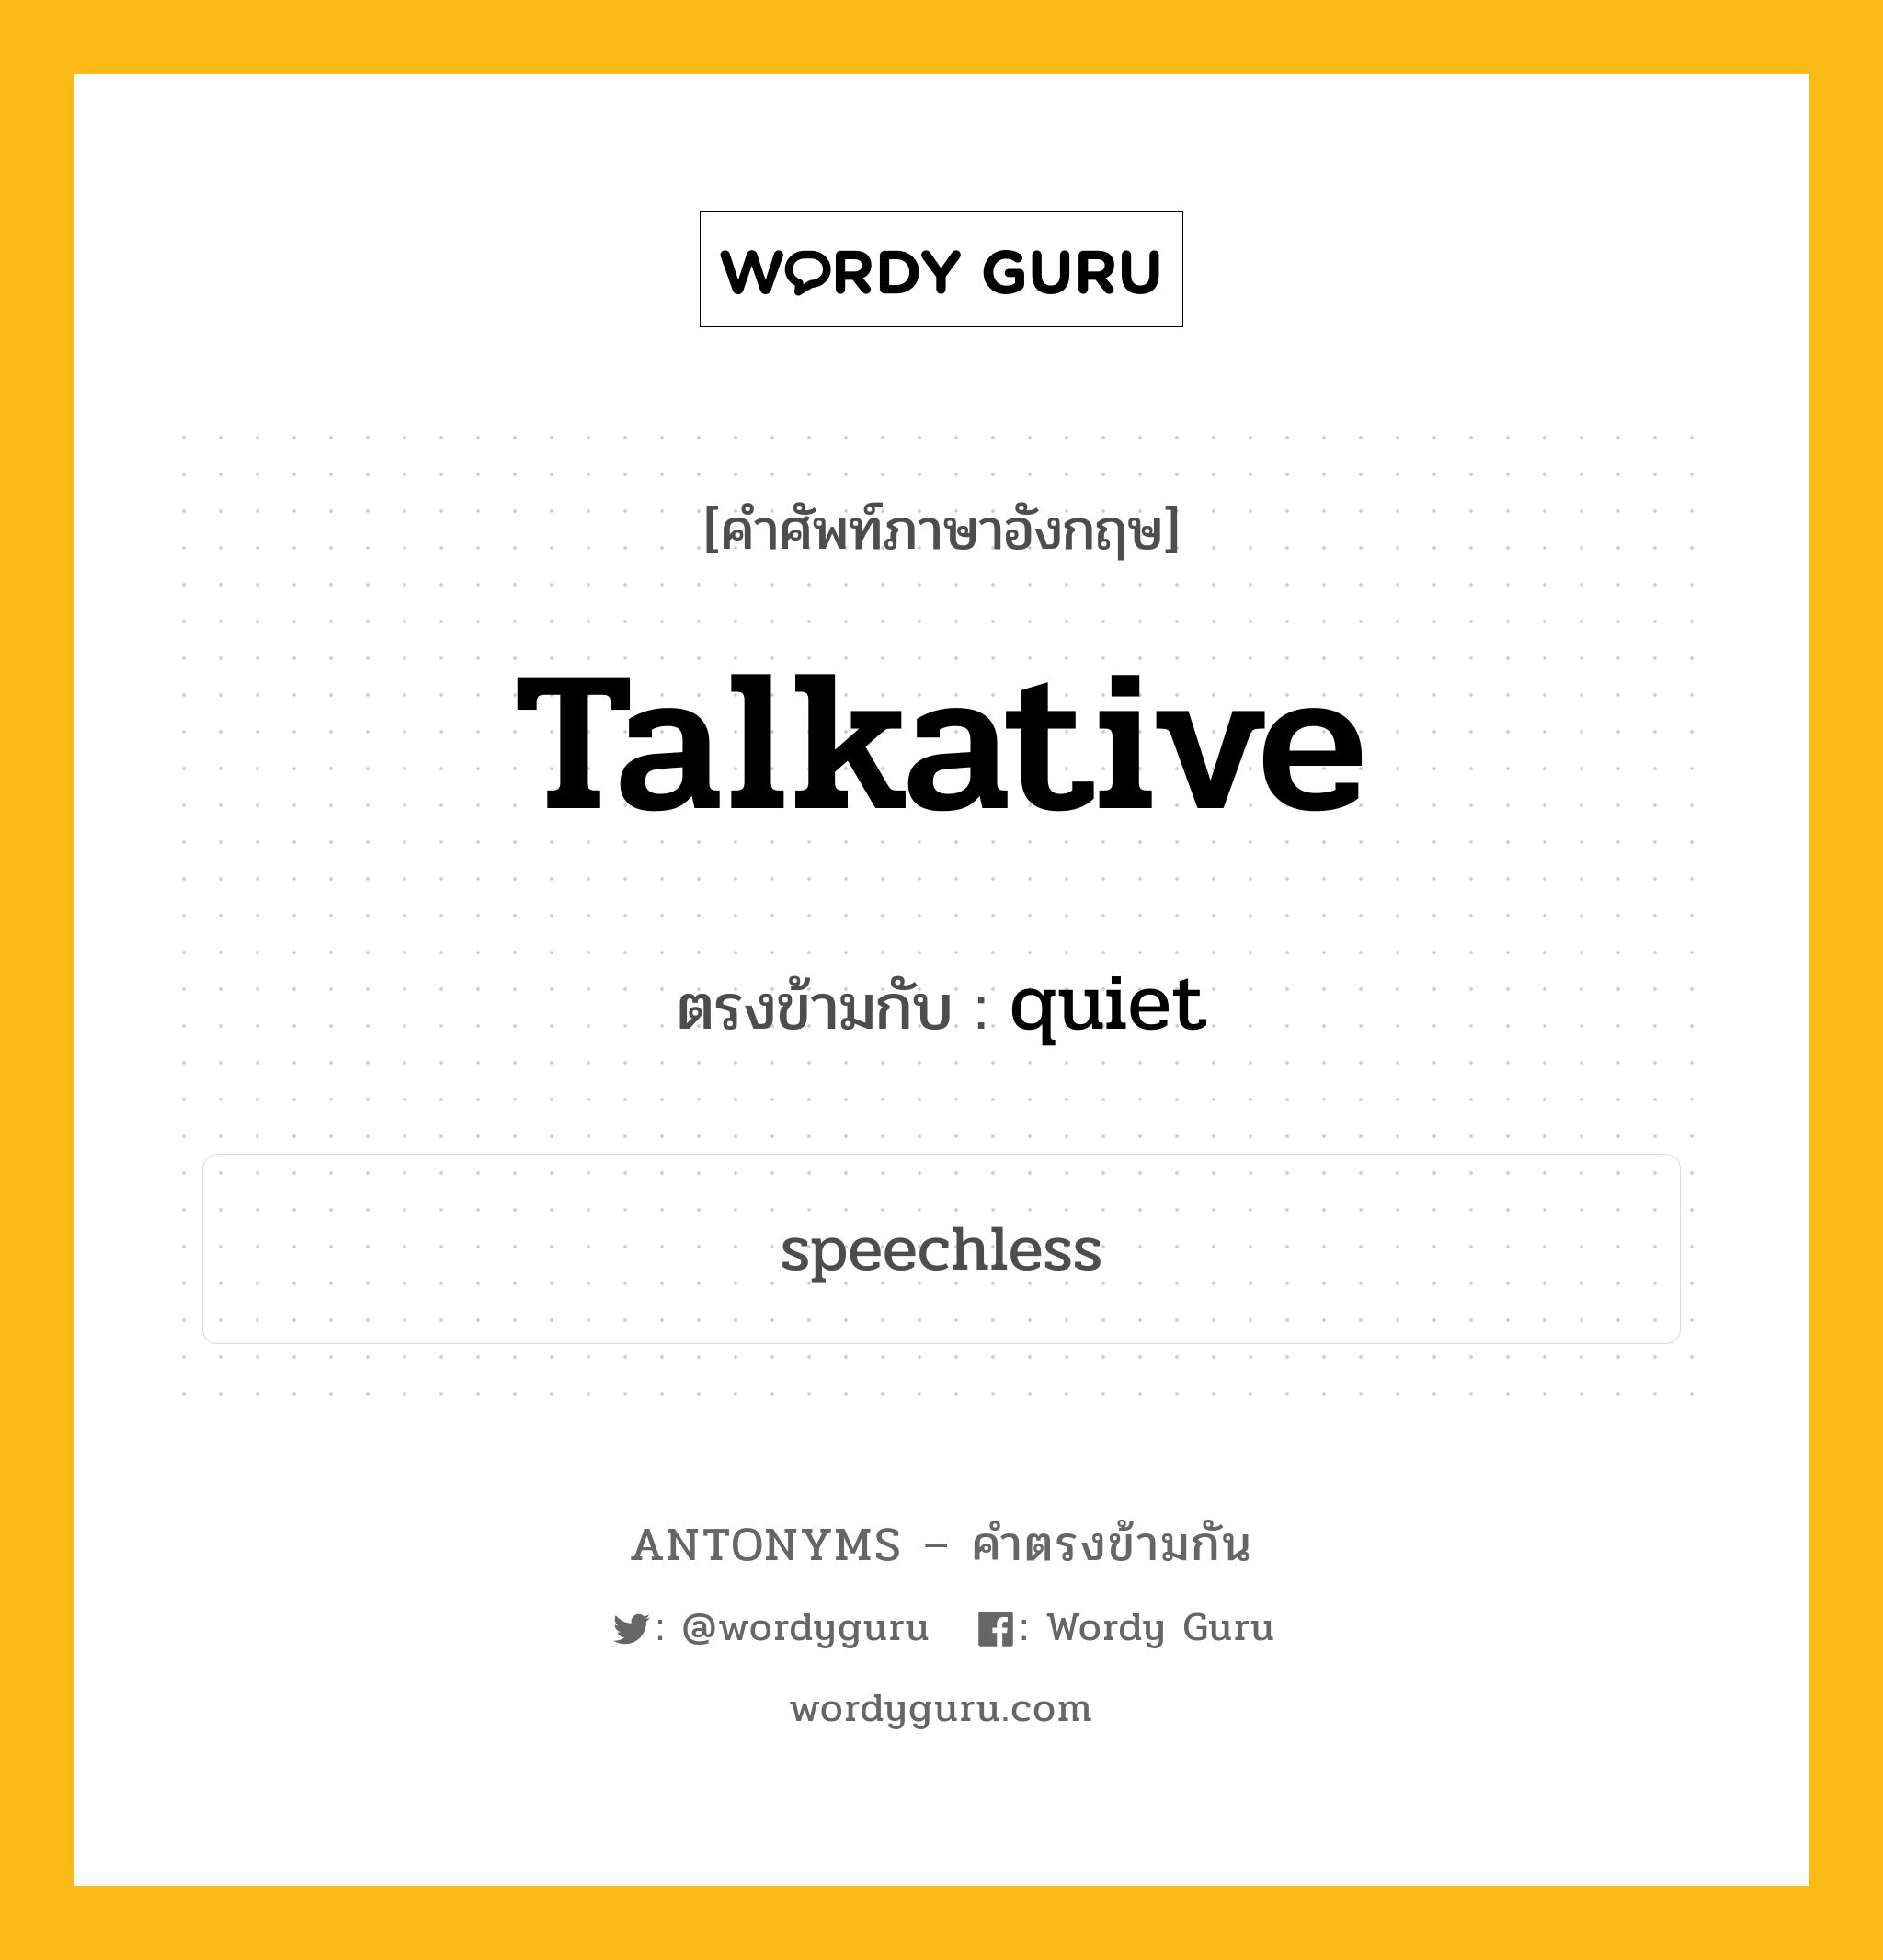 talkative เป็นคำตรงข้ามกับคำไหนบ้าง?, คำศัพท์ภาษาอังกฤษ talkative ตรงข้ามกับ quiet หมวด quiet